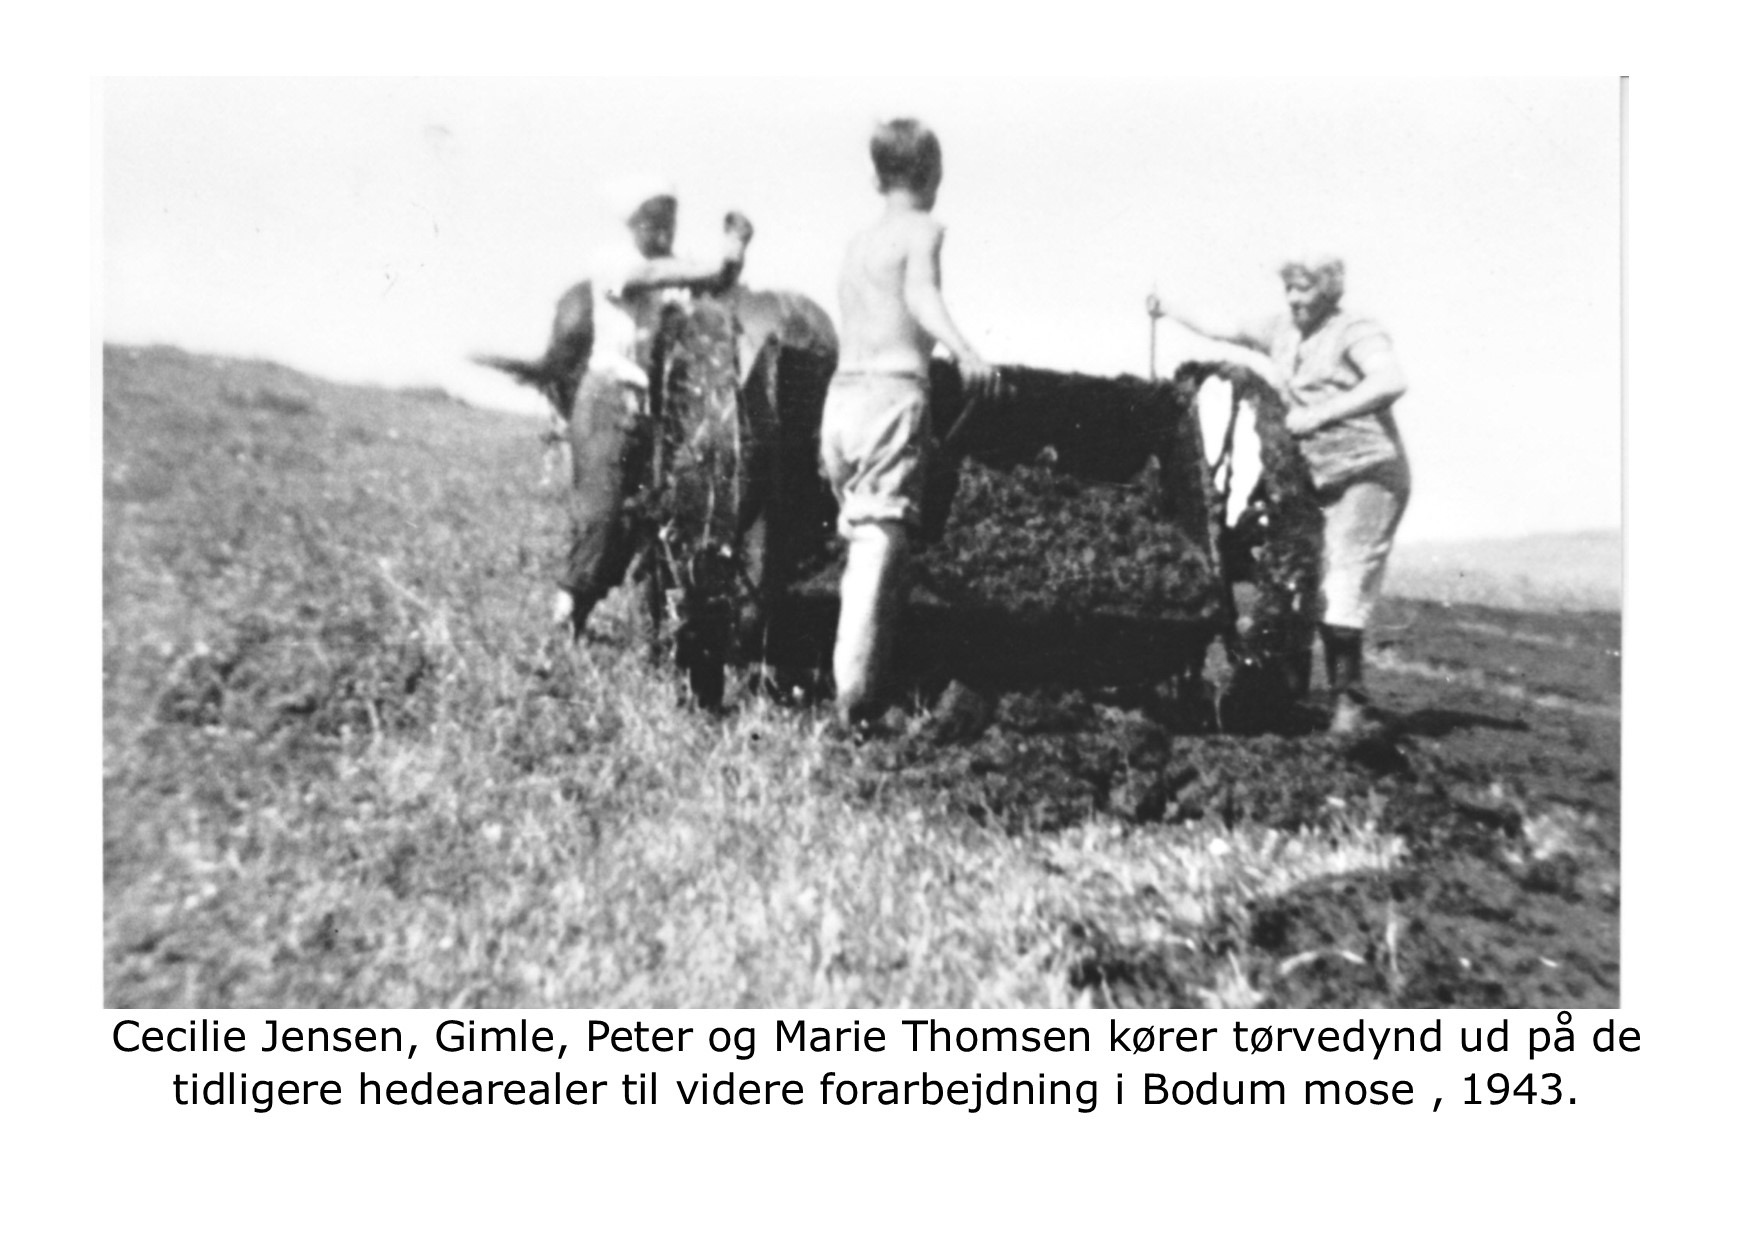 Bodum Mose - tørvedynd til forarbejdning 1943